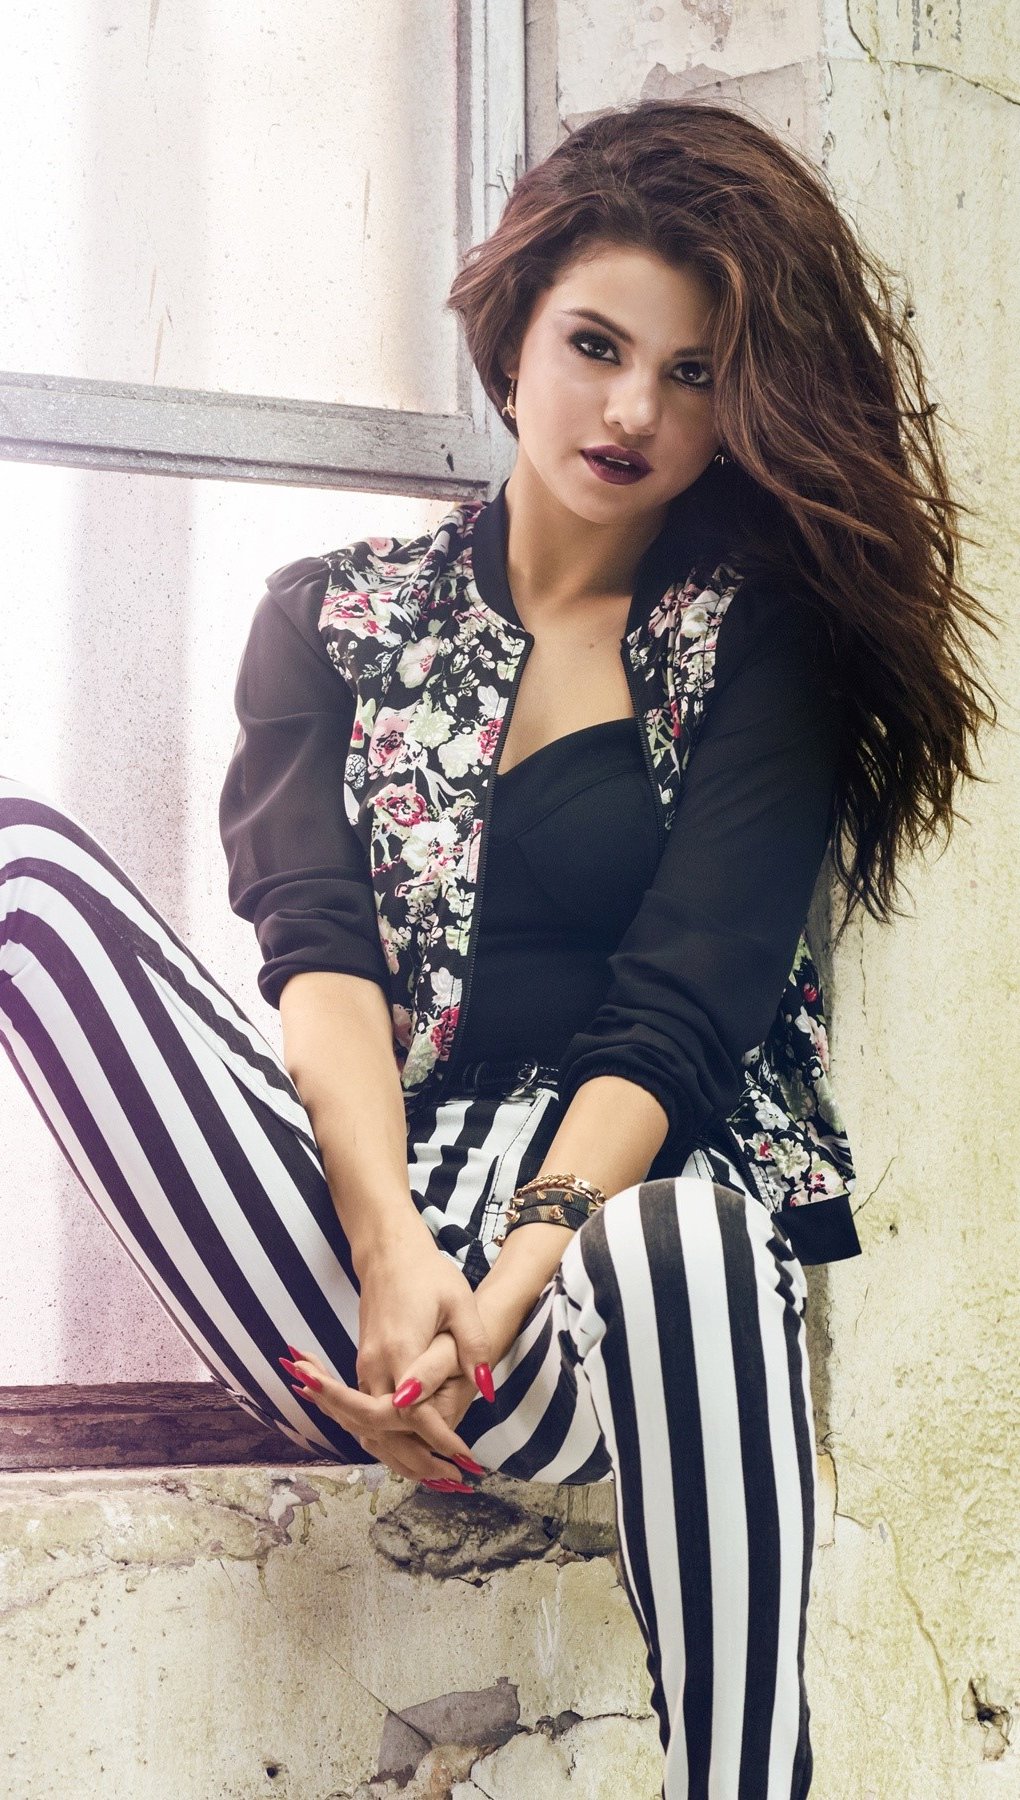 Fondos de pantalla Selena Gomez con un pantalón de rayas Vertical